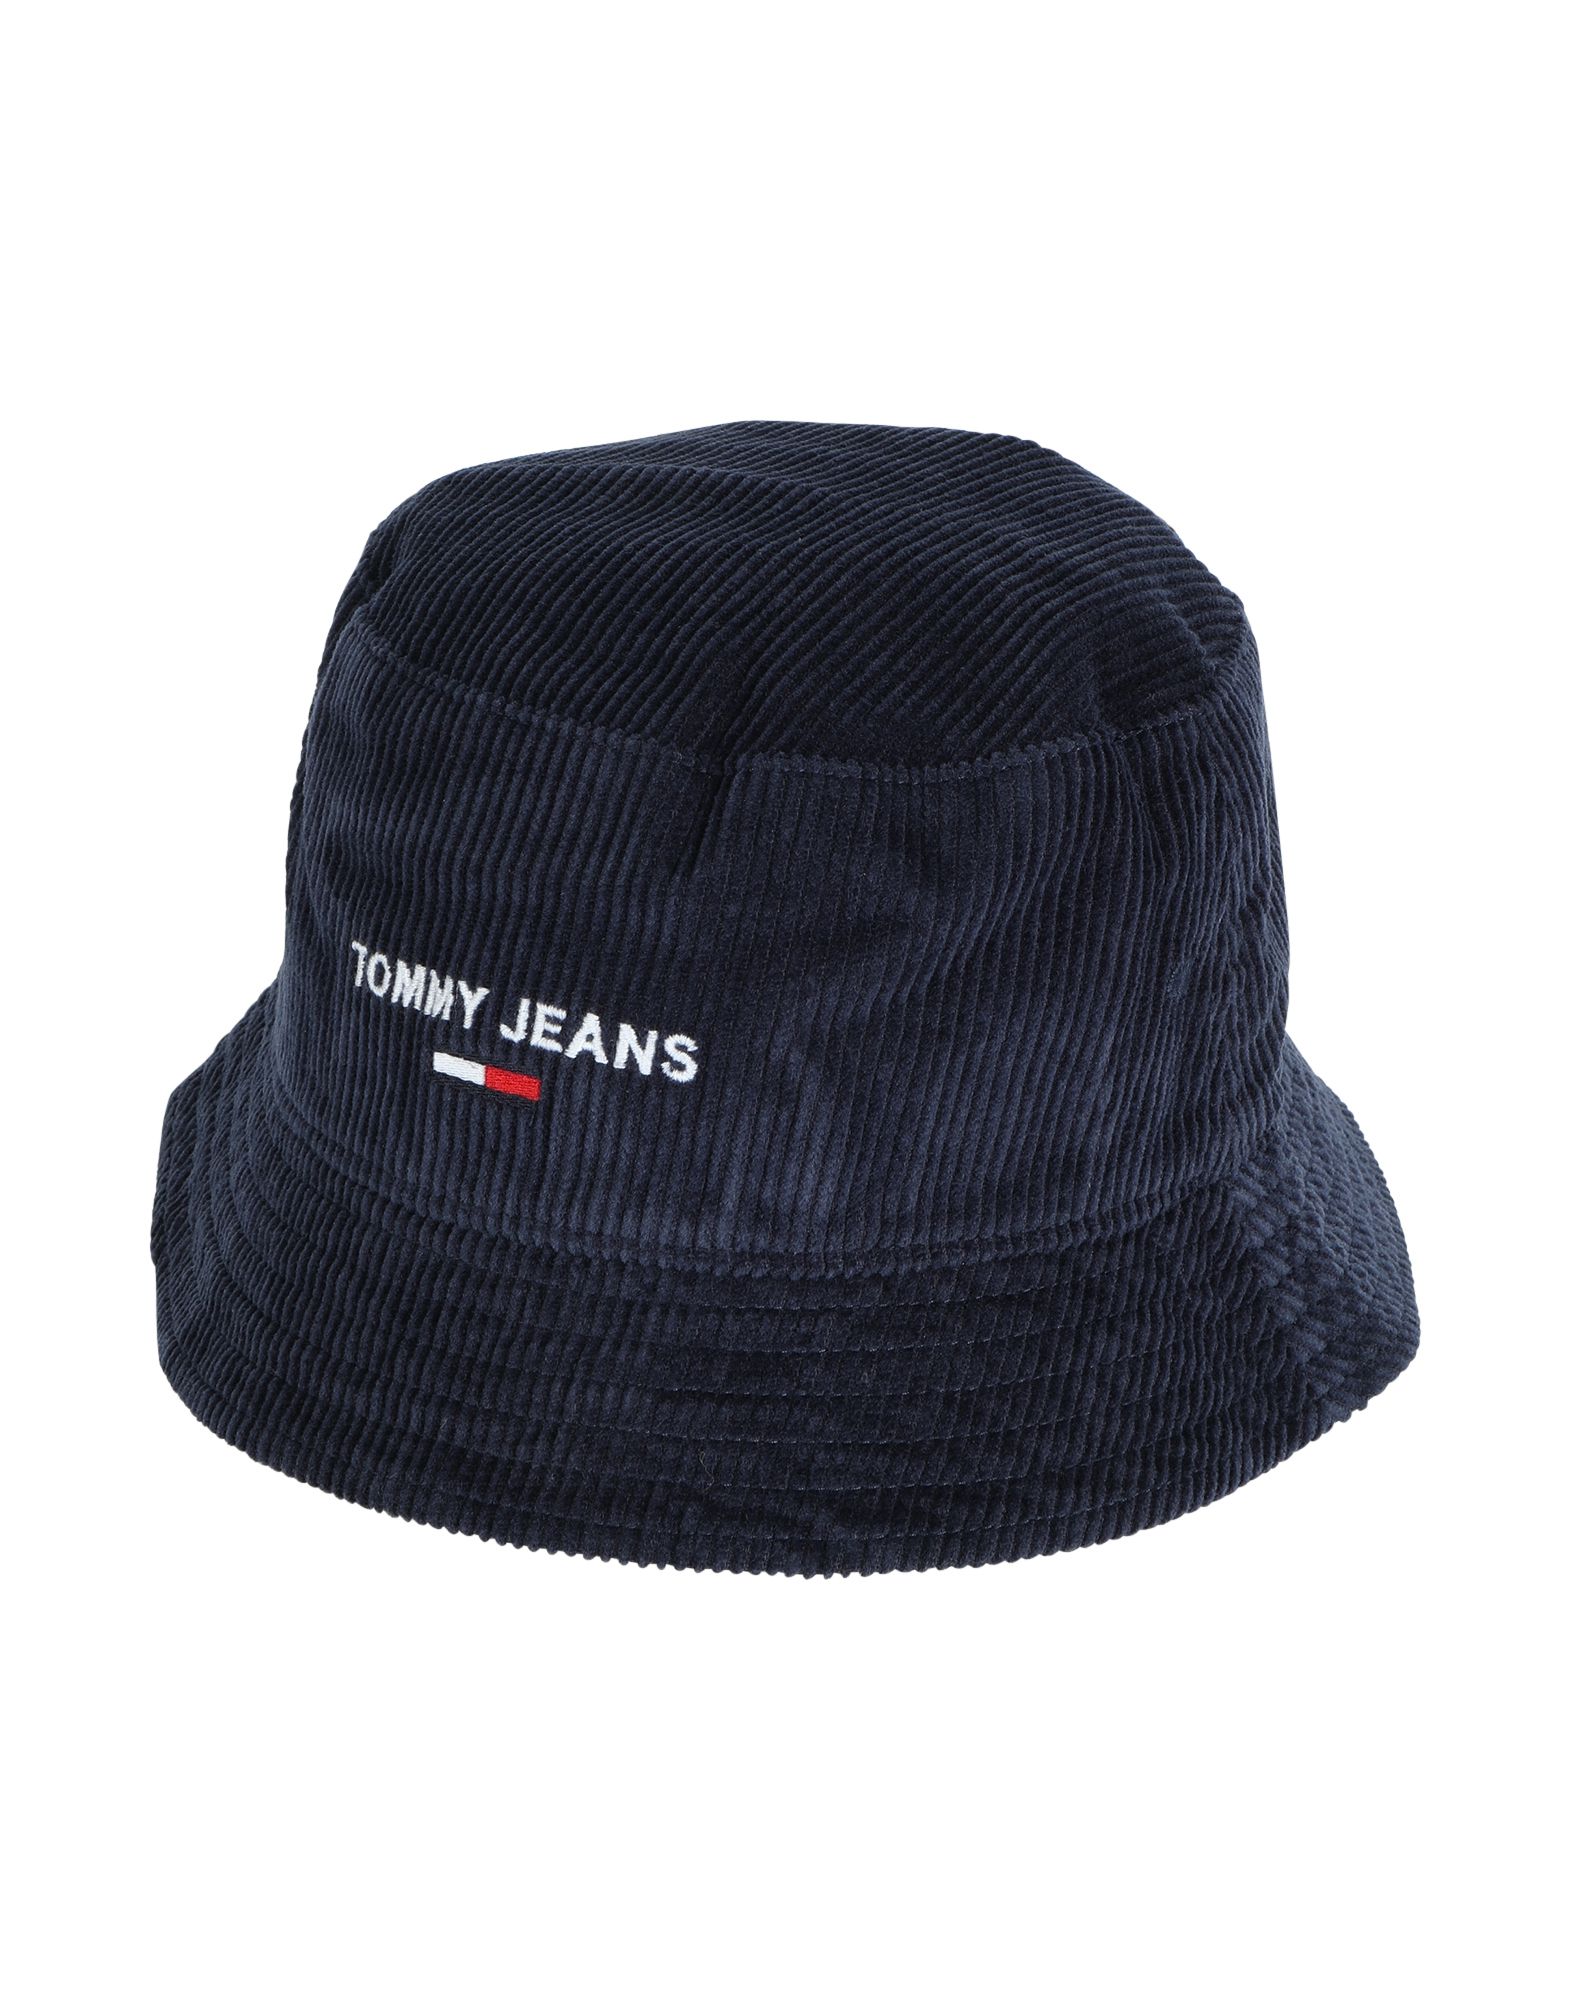 《期間限定セール開催中!》TOMMY JEANS メンズ 帽子 ダークブルー one size コットン 100% TJM SPORT BUCKET